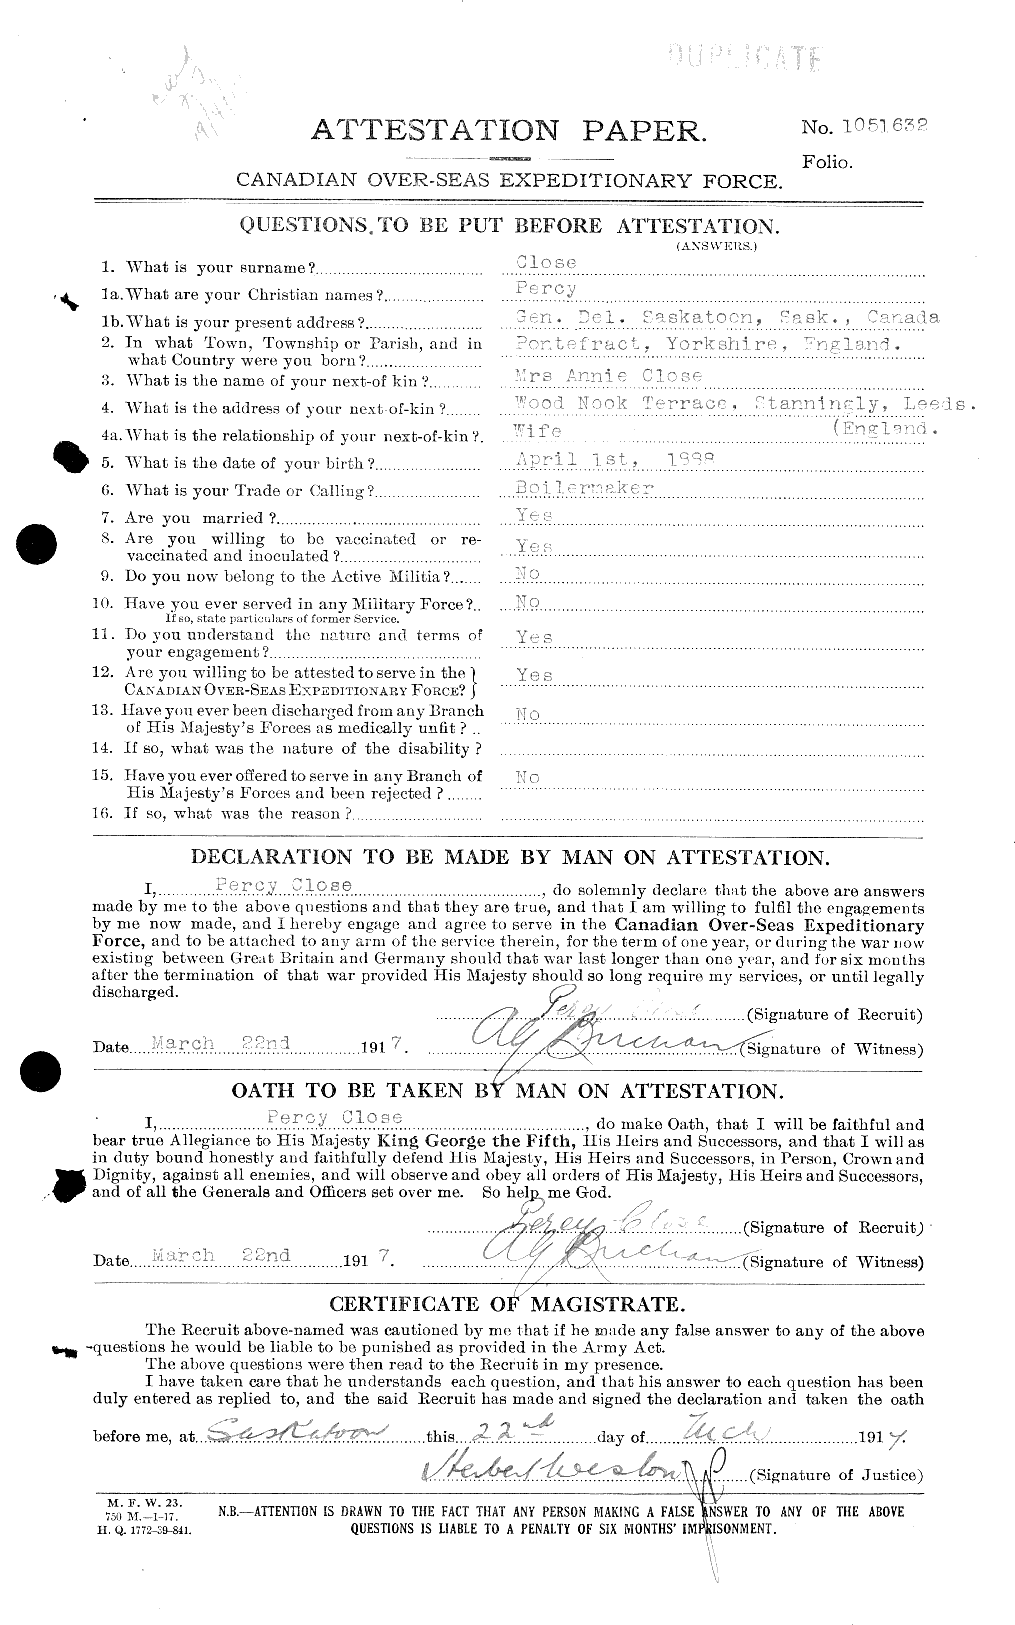 Dossiers du Personnel de la Première Guerre mondiale - CEC 025926a